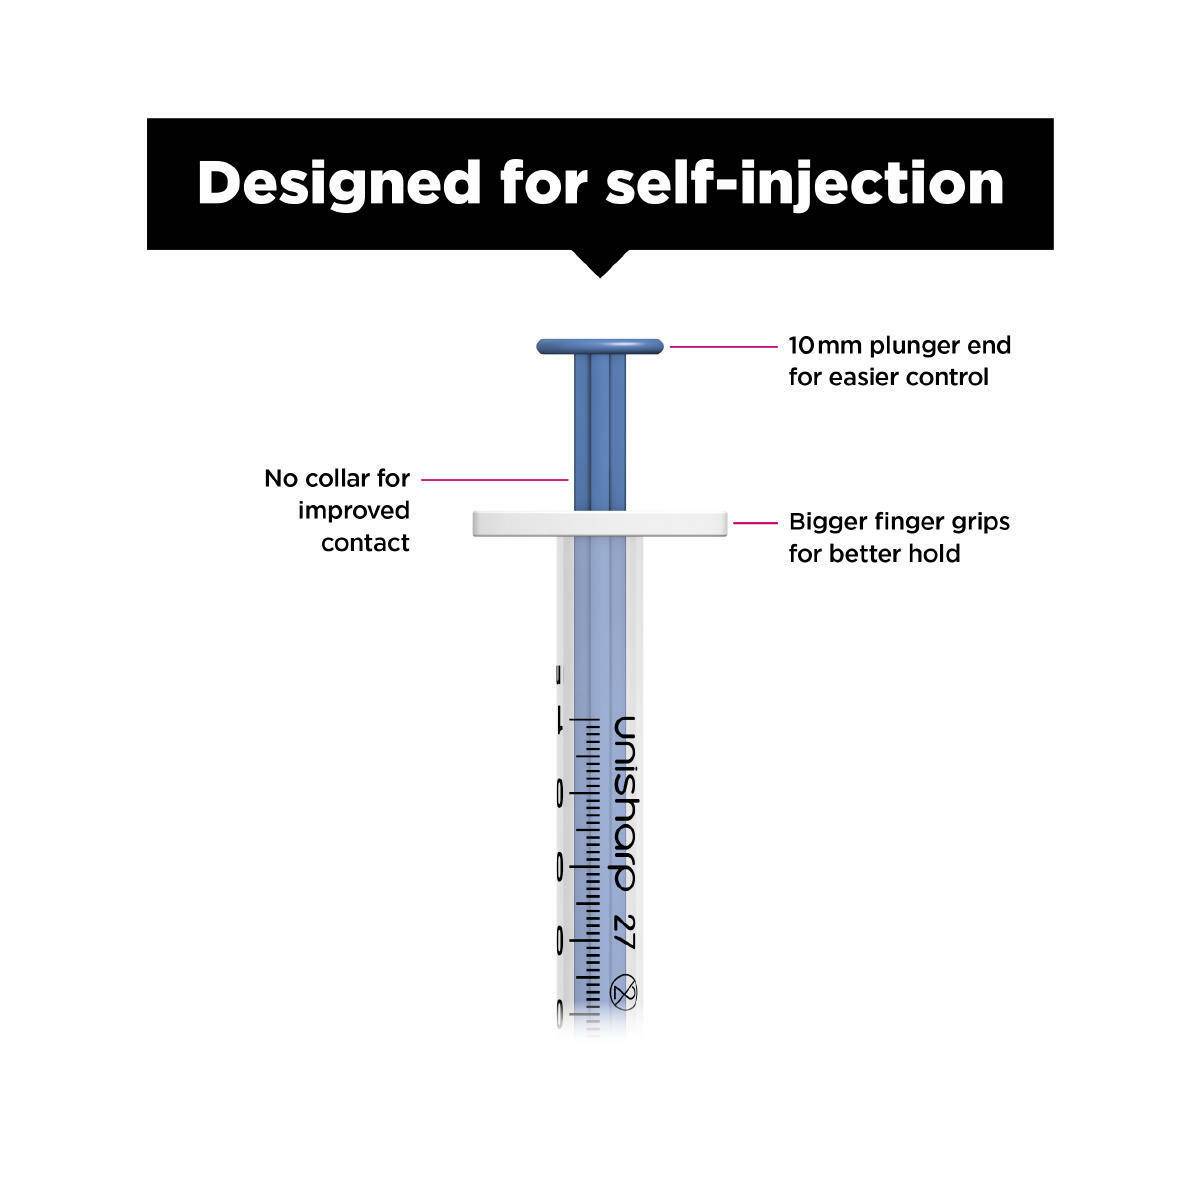 1ml 0.5 inch 27g Blue Unisharp Syringe and Needle u100 - UKMEDI